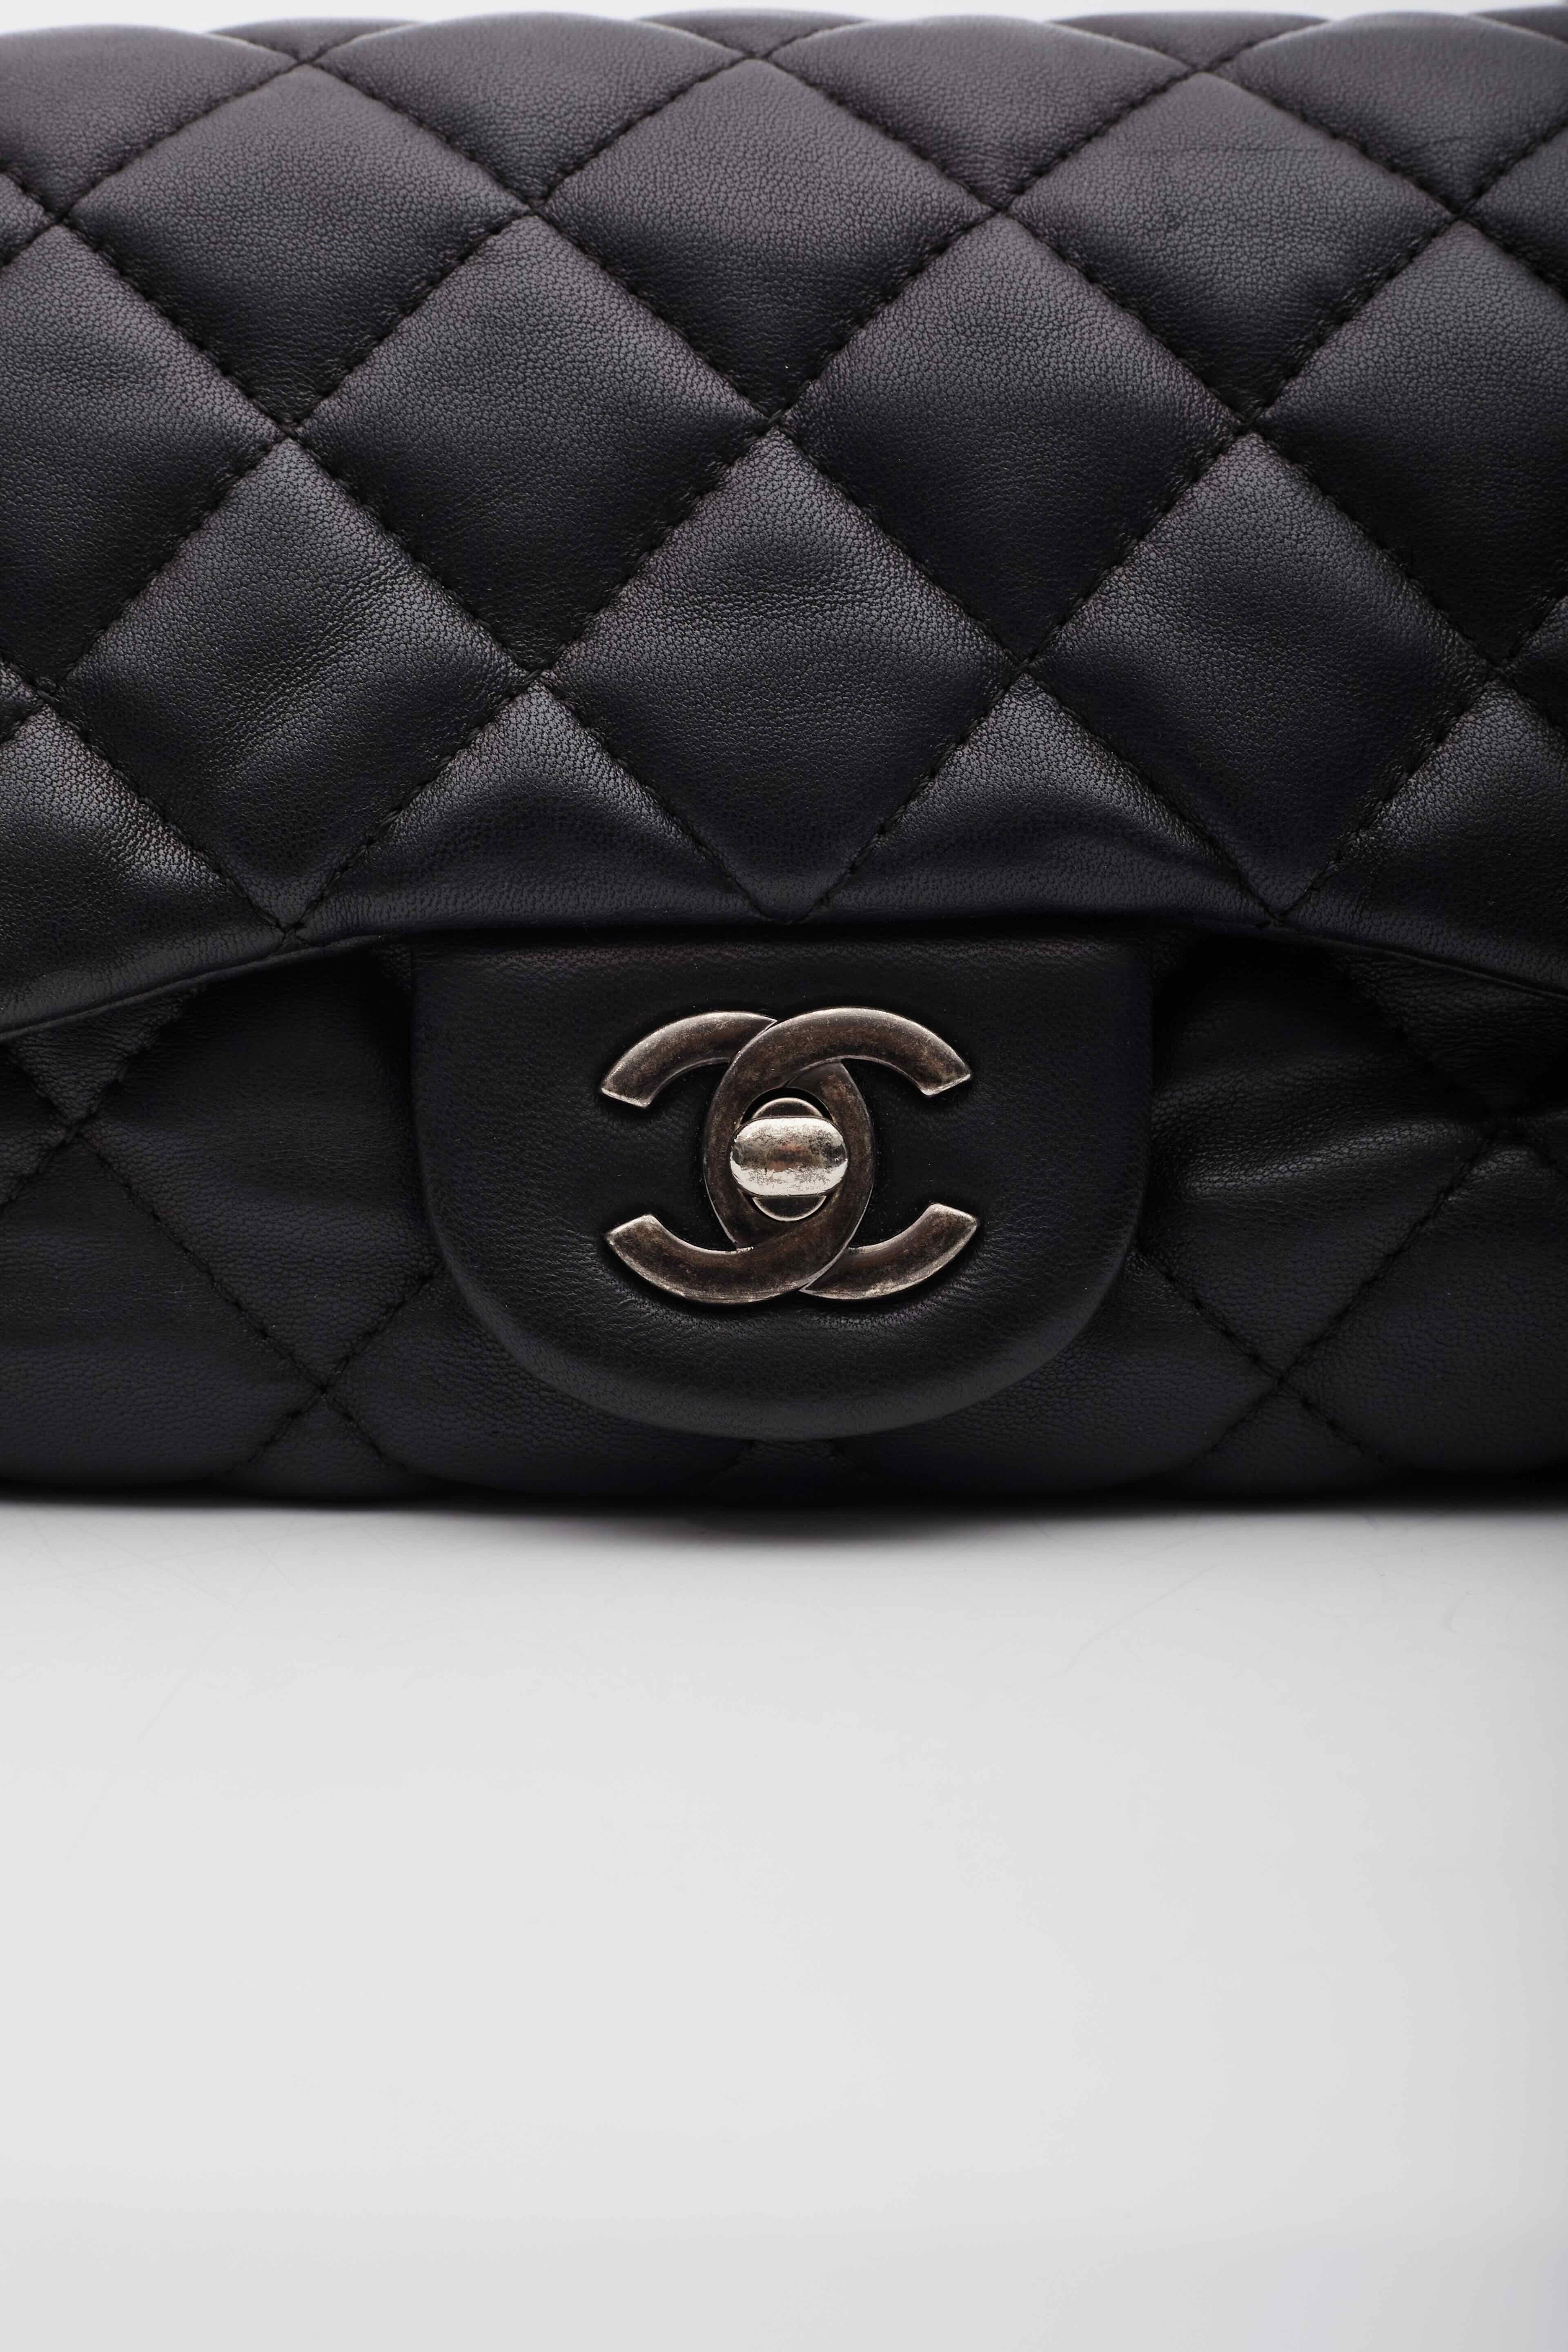 Women's Chanel Black Lambskin Two Way Flap Shoulder Bag For Sale